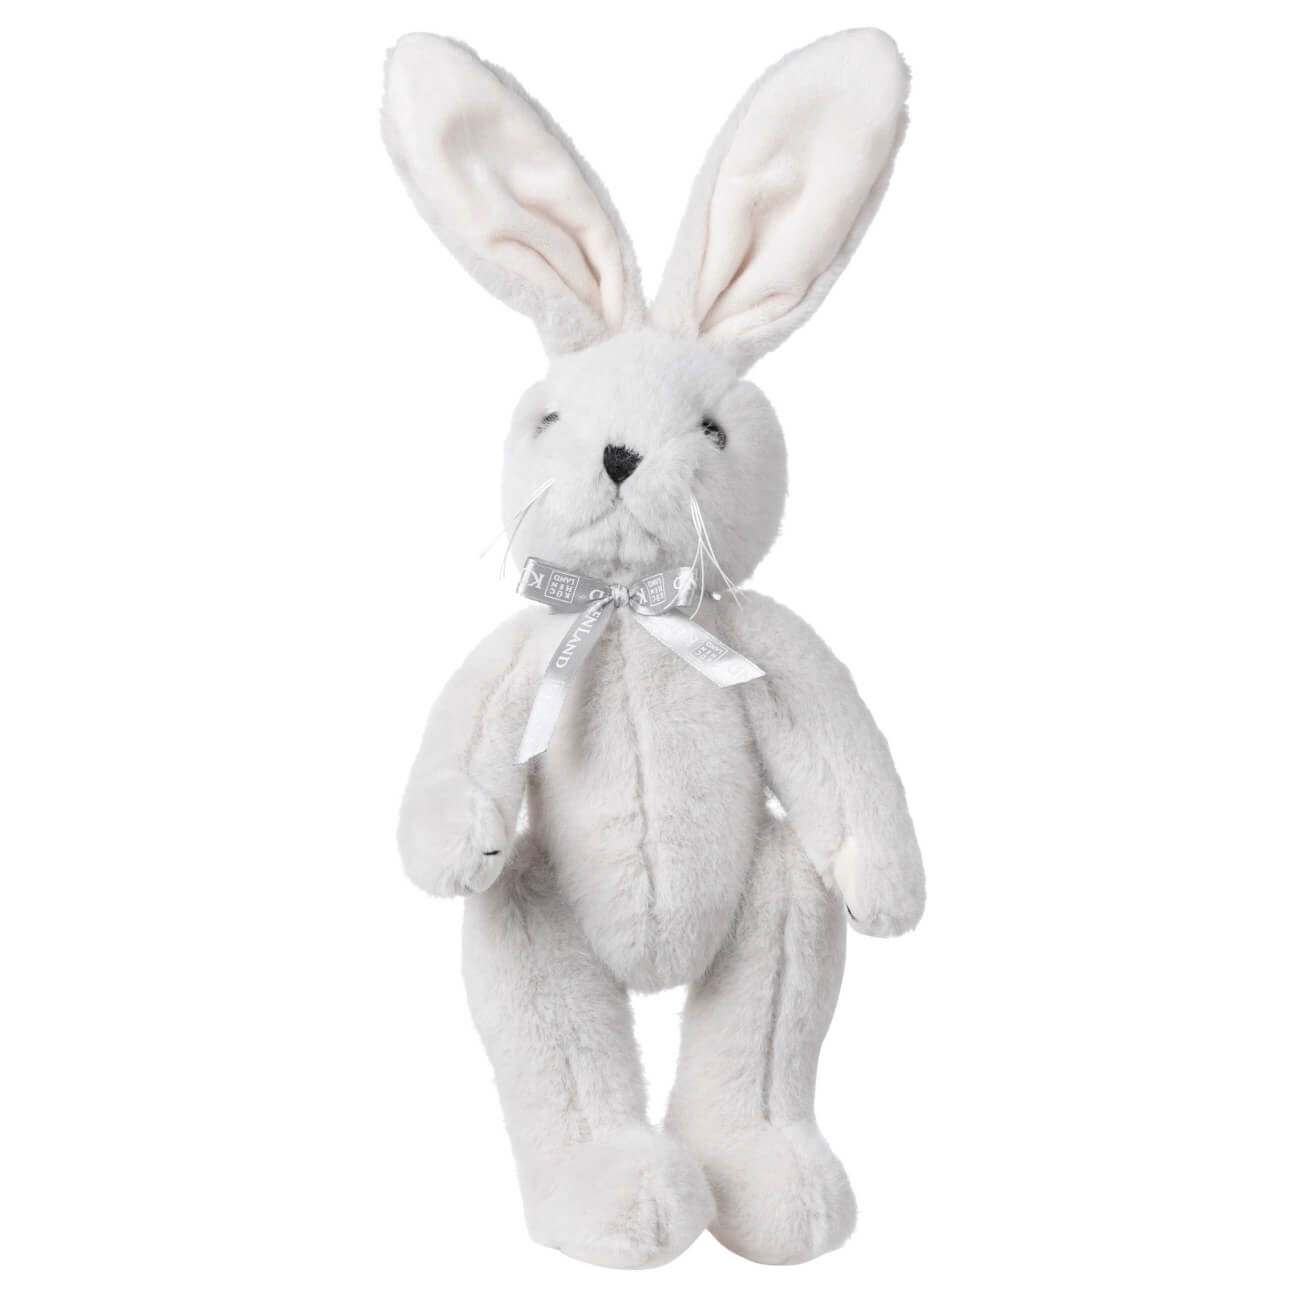 Игрушка, 30 см, мягкая, с подвижными лапами, полиэстер, светло-серая, Кролик, Rabbit toy игрушка 30 см мягкая с подвижными лапами полиэстер светло серая кролик rabbit toy